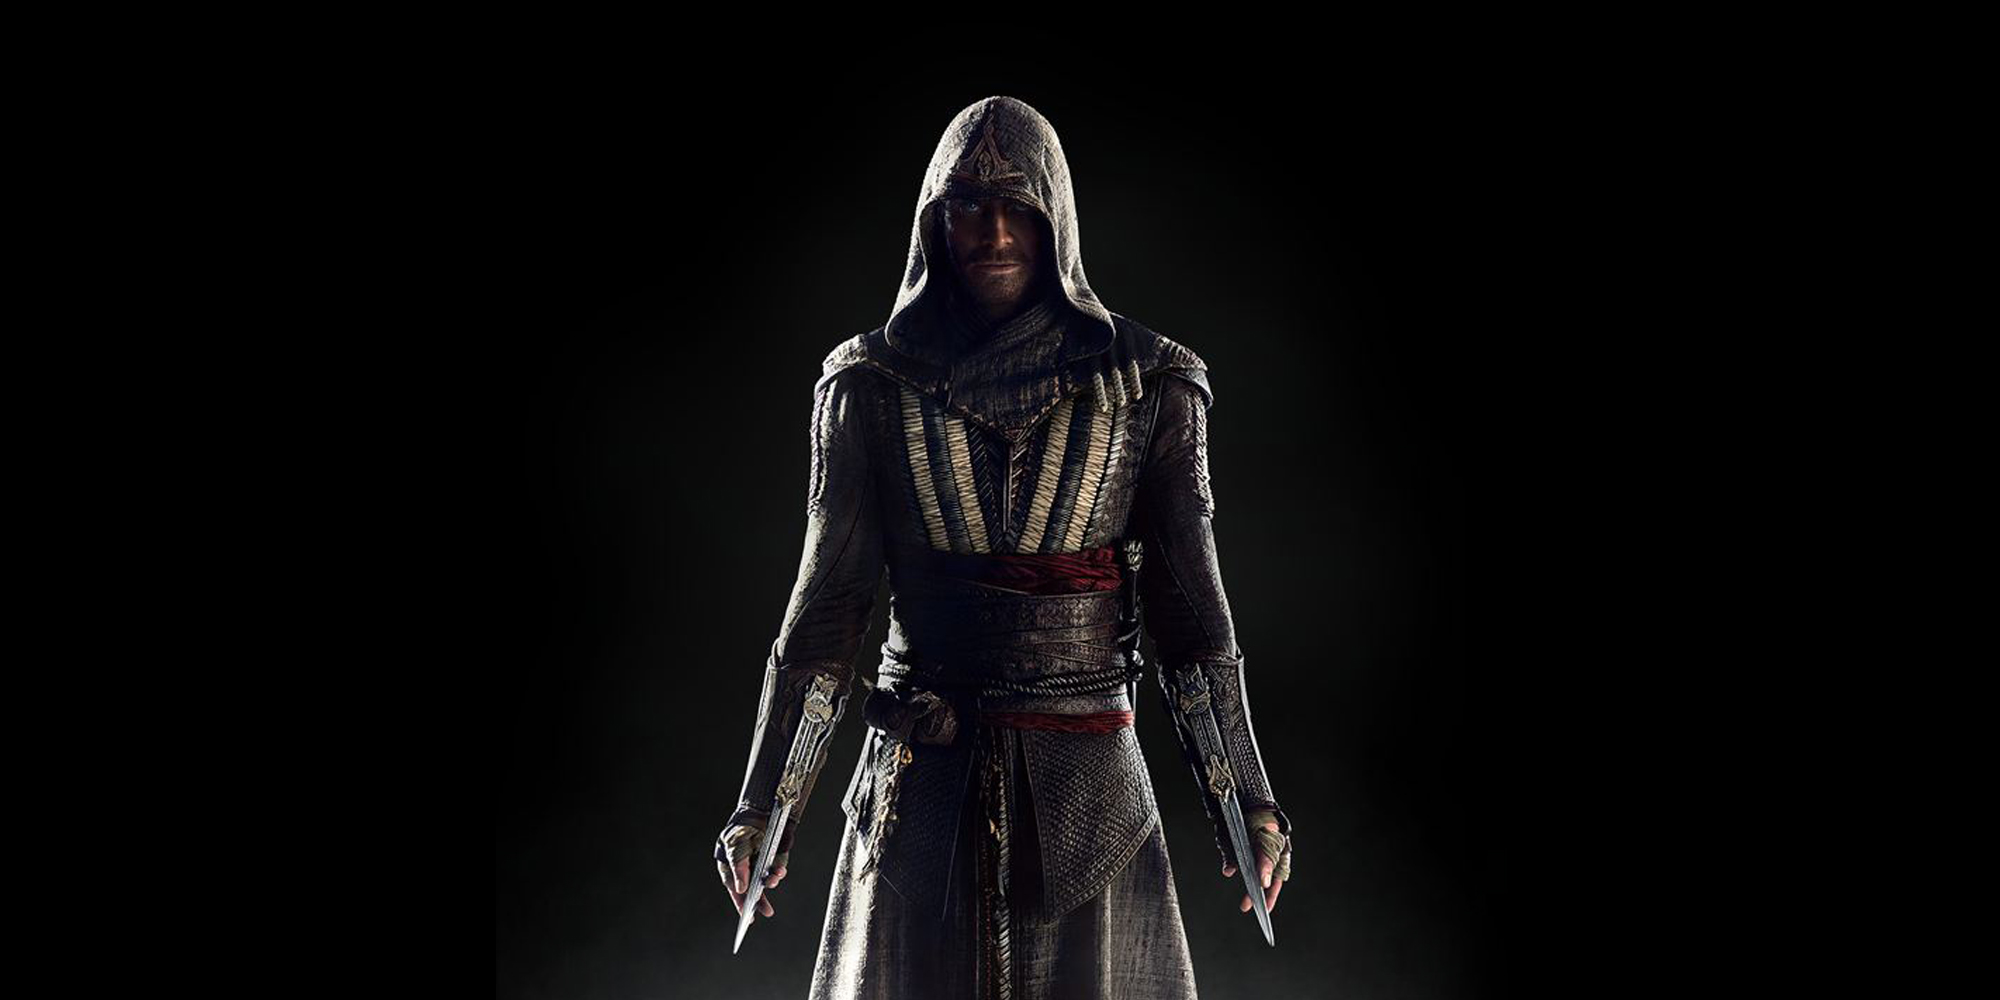  Assassin’s Creed fait le grand saut !